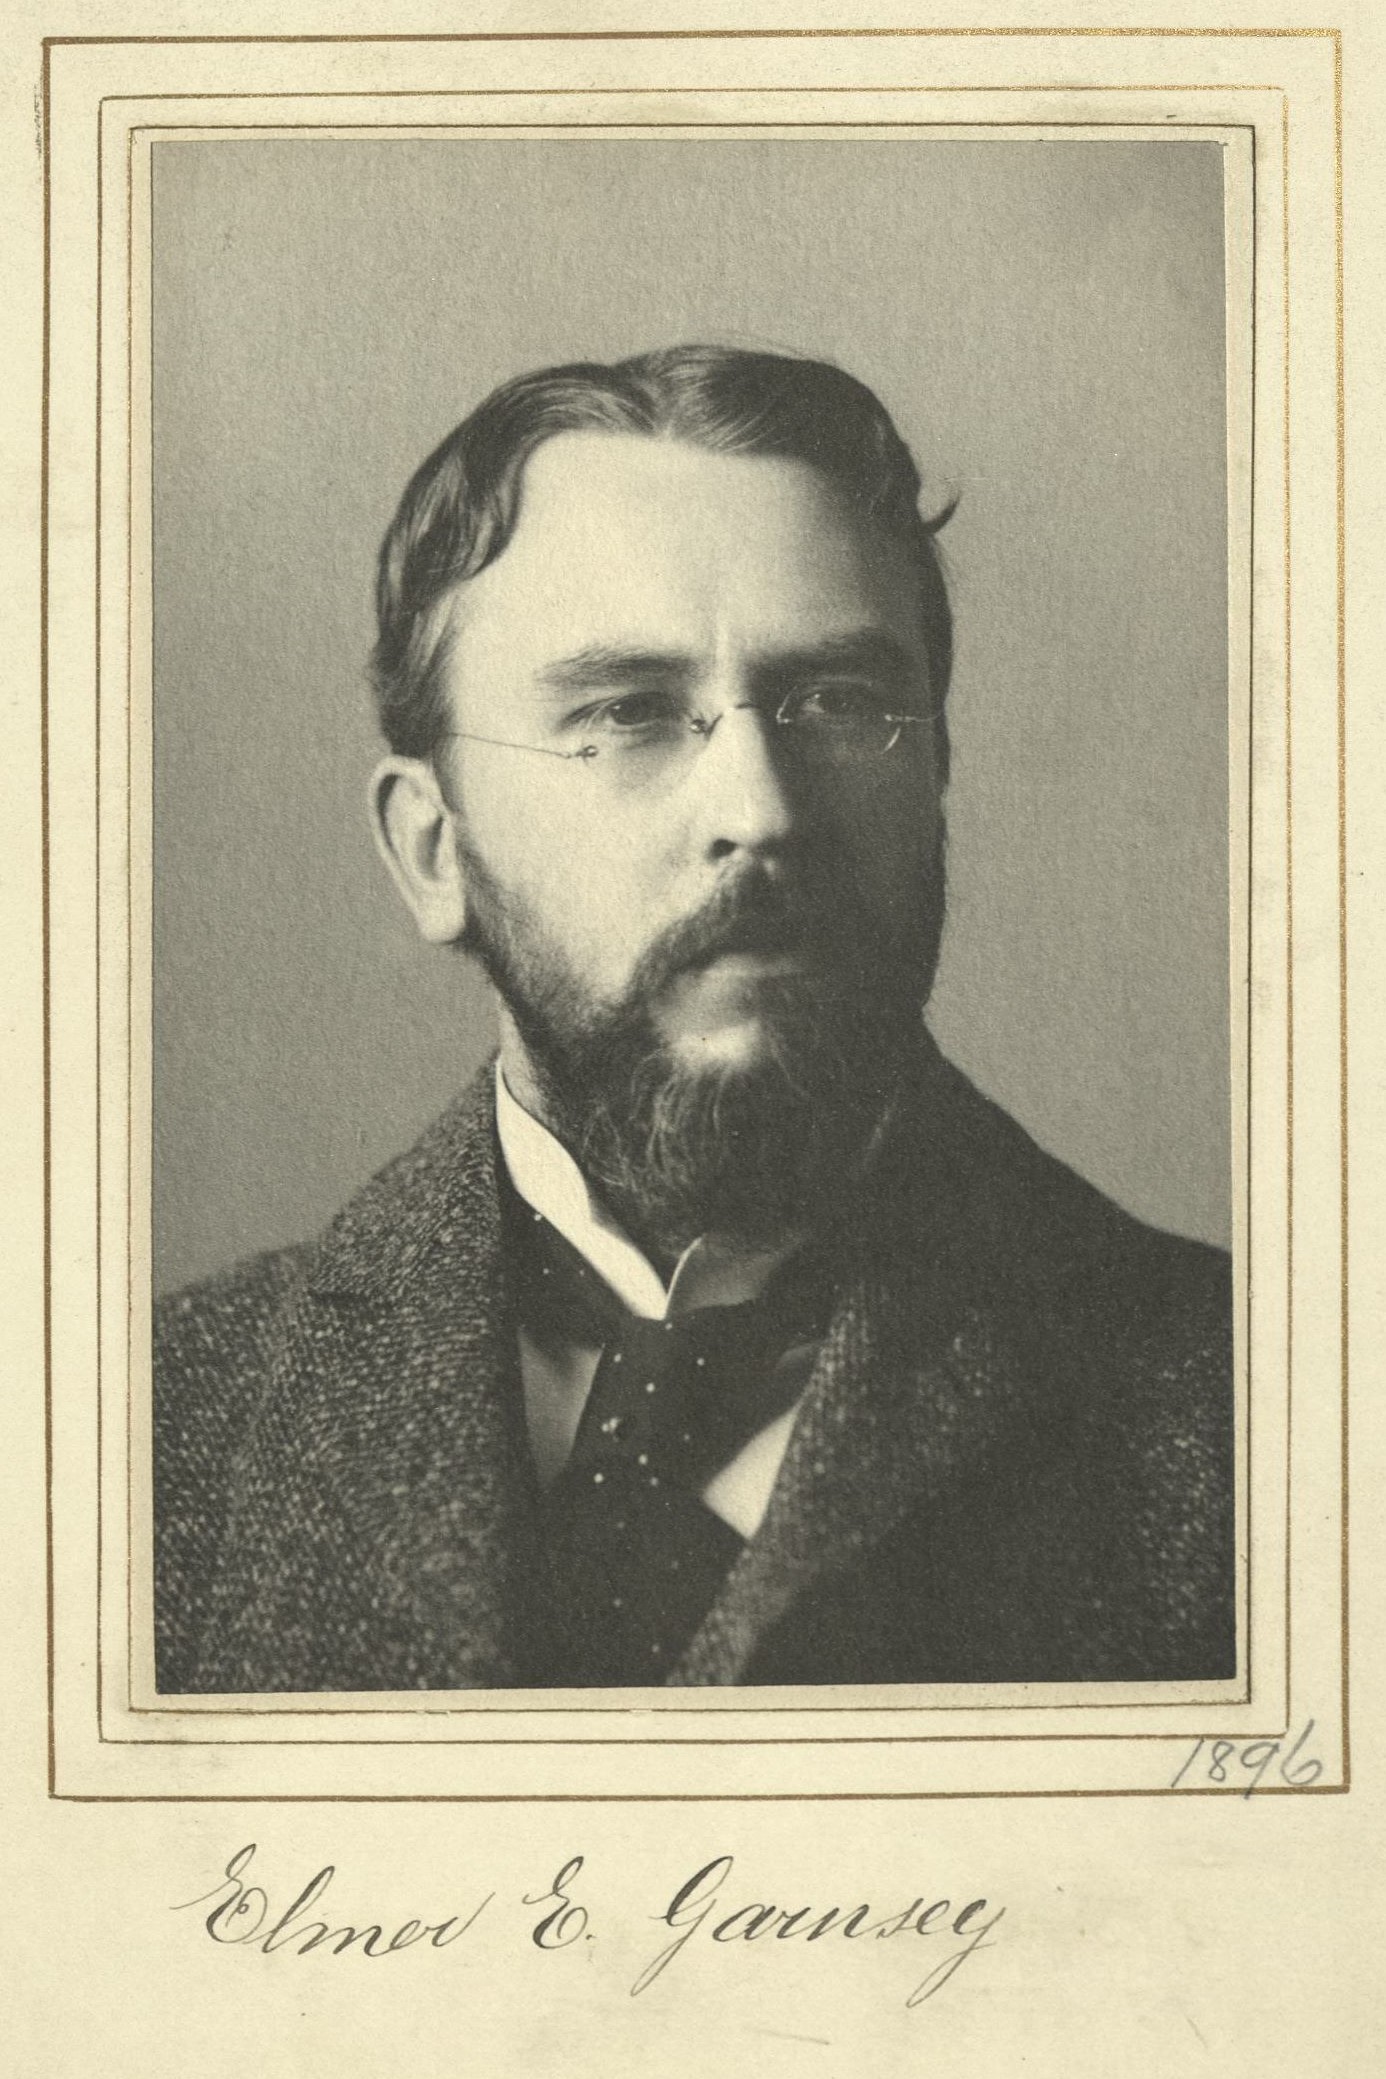 Member portrait of Elmer E. Garnsey